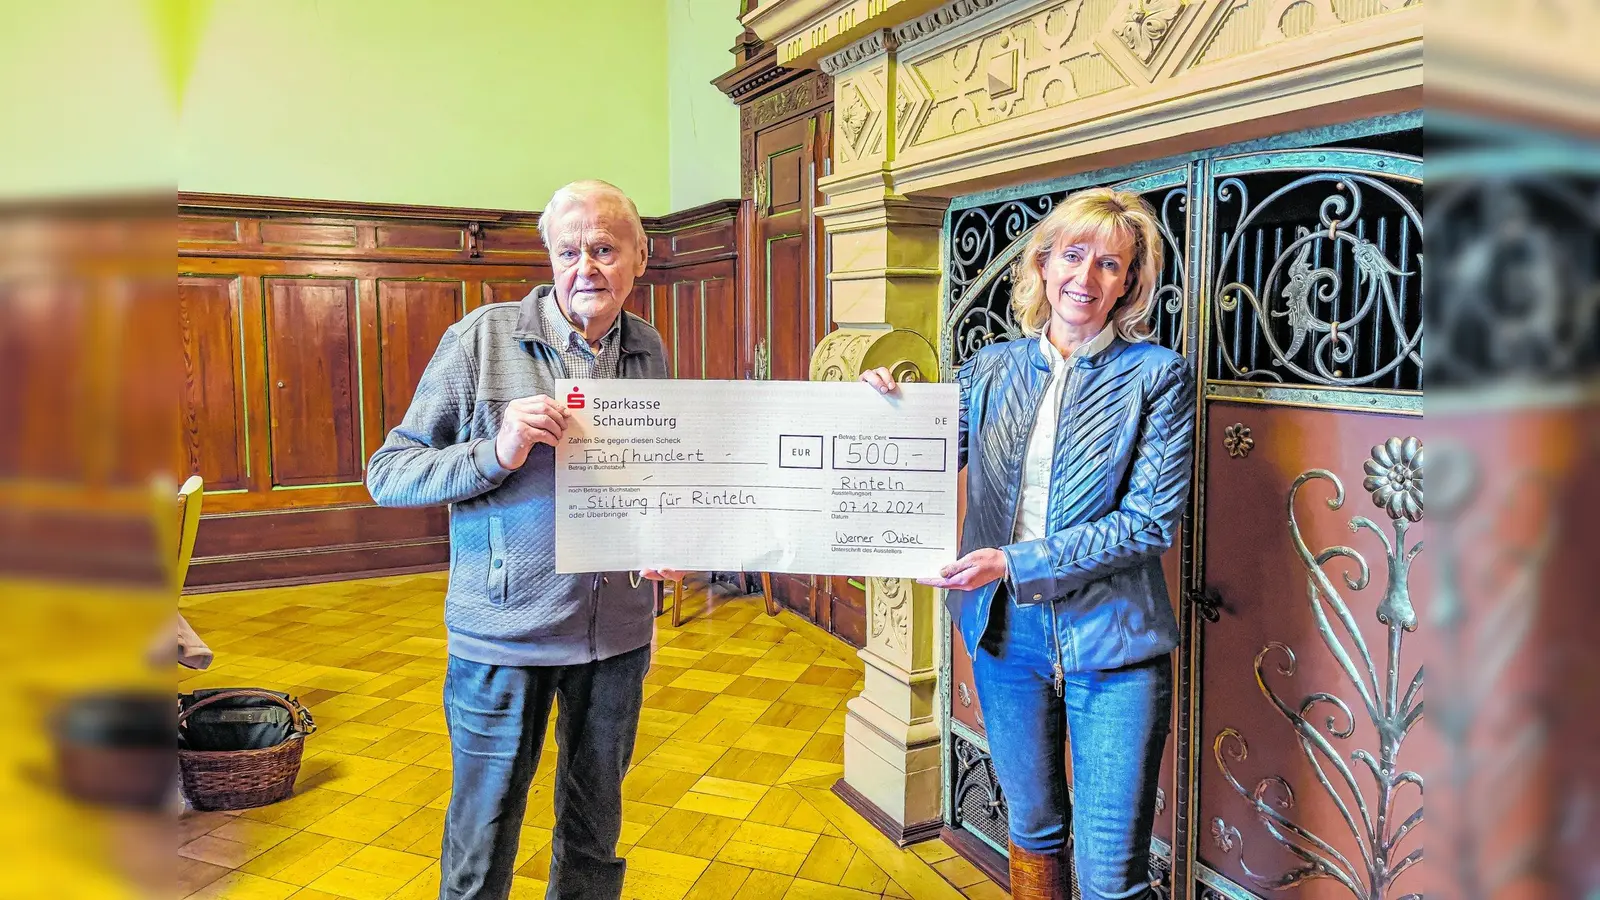 Werner Dubiel überreicht an Andrea Lange einen Scheck in Wert von 500 Euro für die Stiftung für Rinteln. (Foto: red)